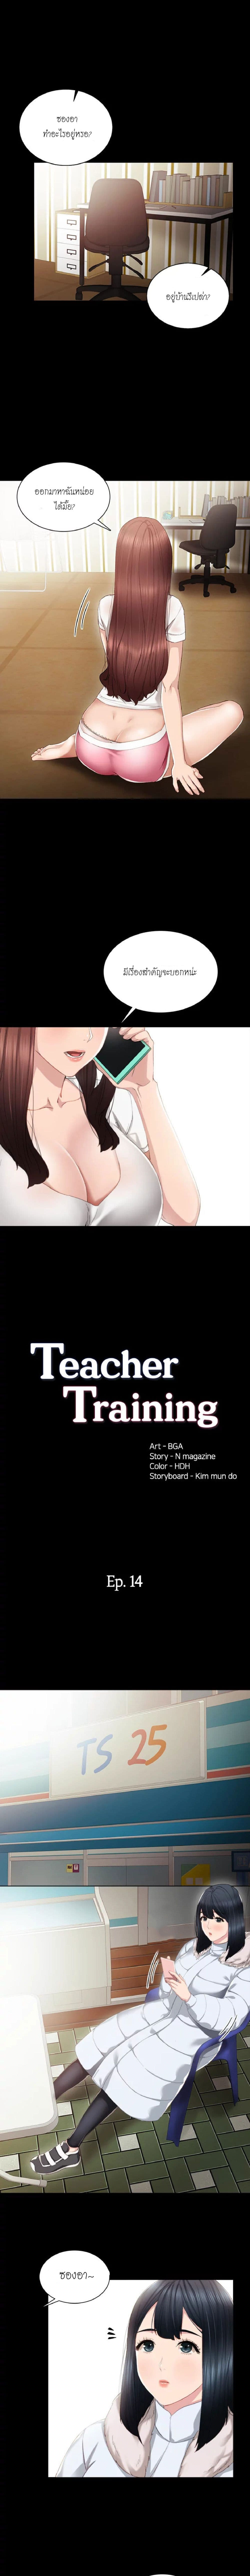 Teaching-Practice-14_02.jpg